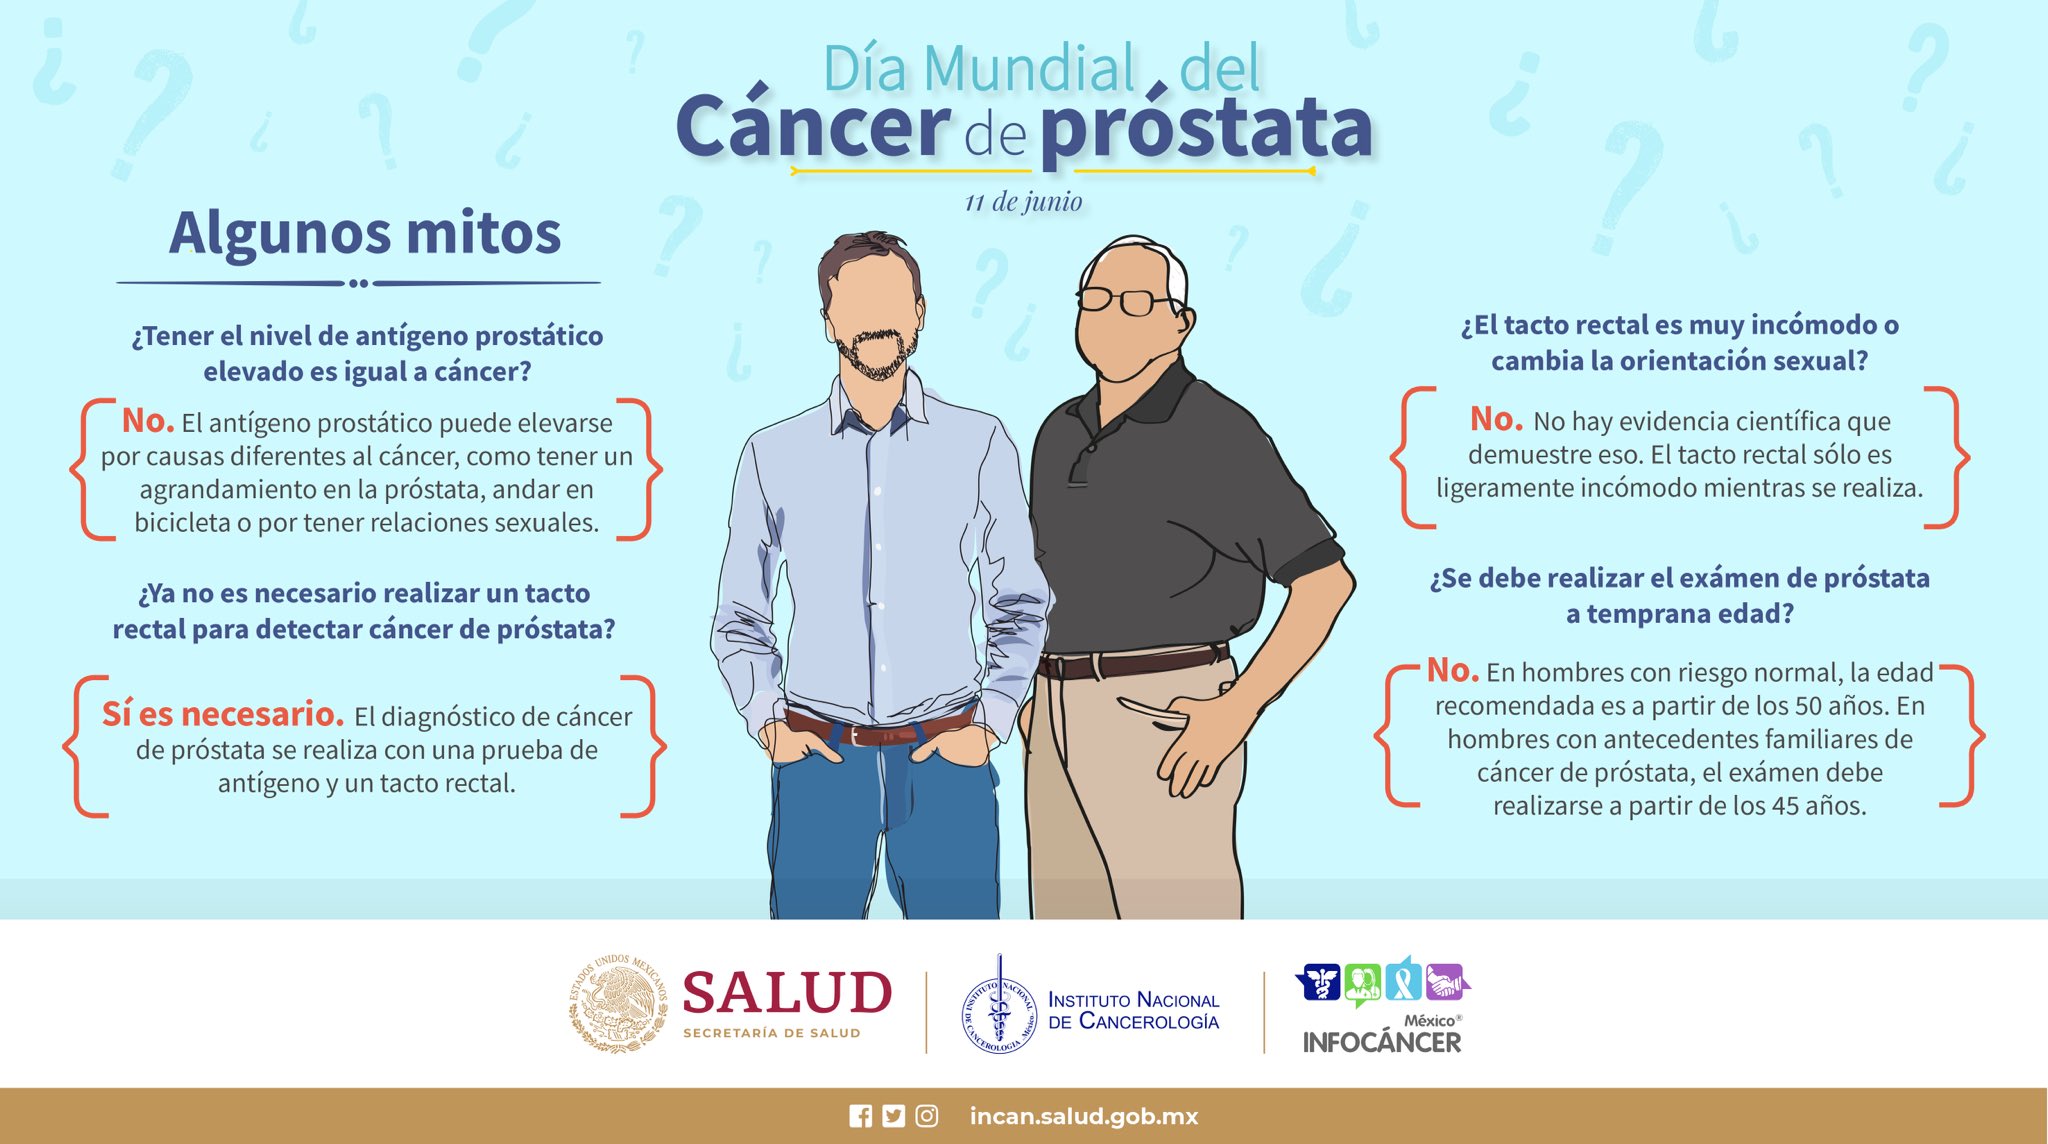 tacto rectal cáncer de próstata cum a fost tratată prostatita în rusia?